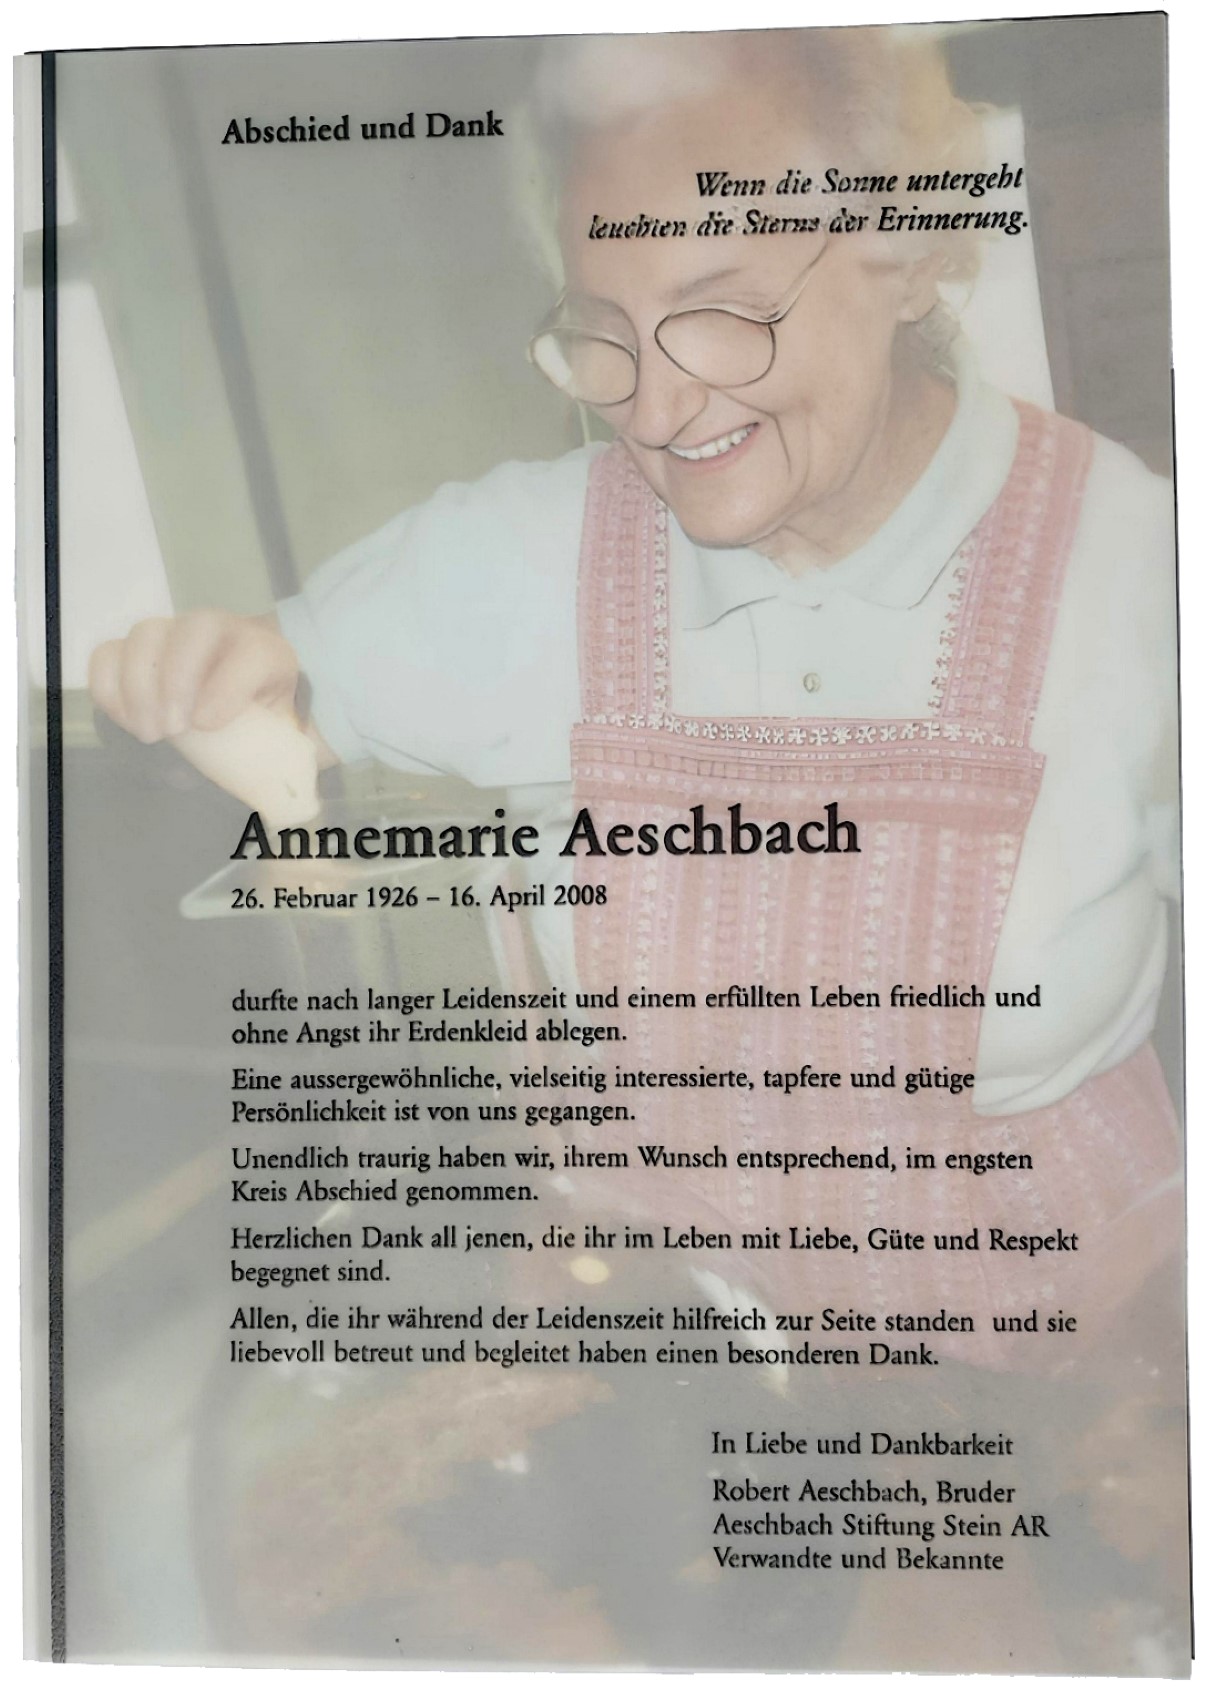 Annemarie Aeschbach, Chochmah